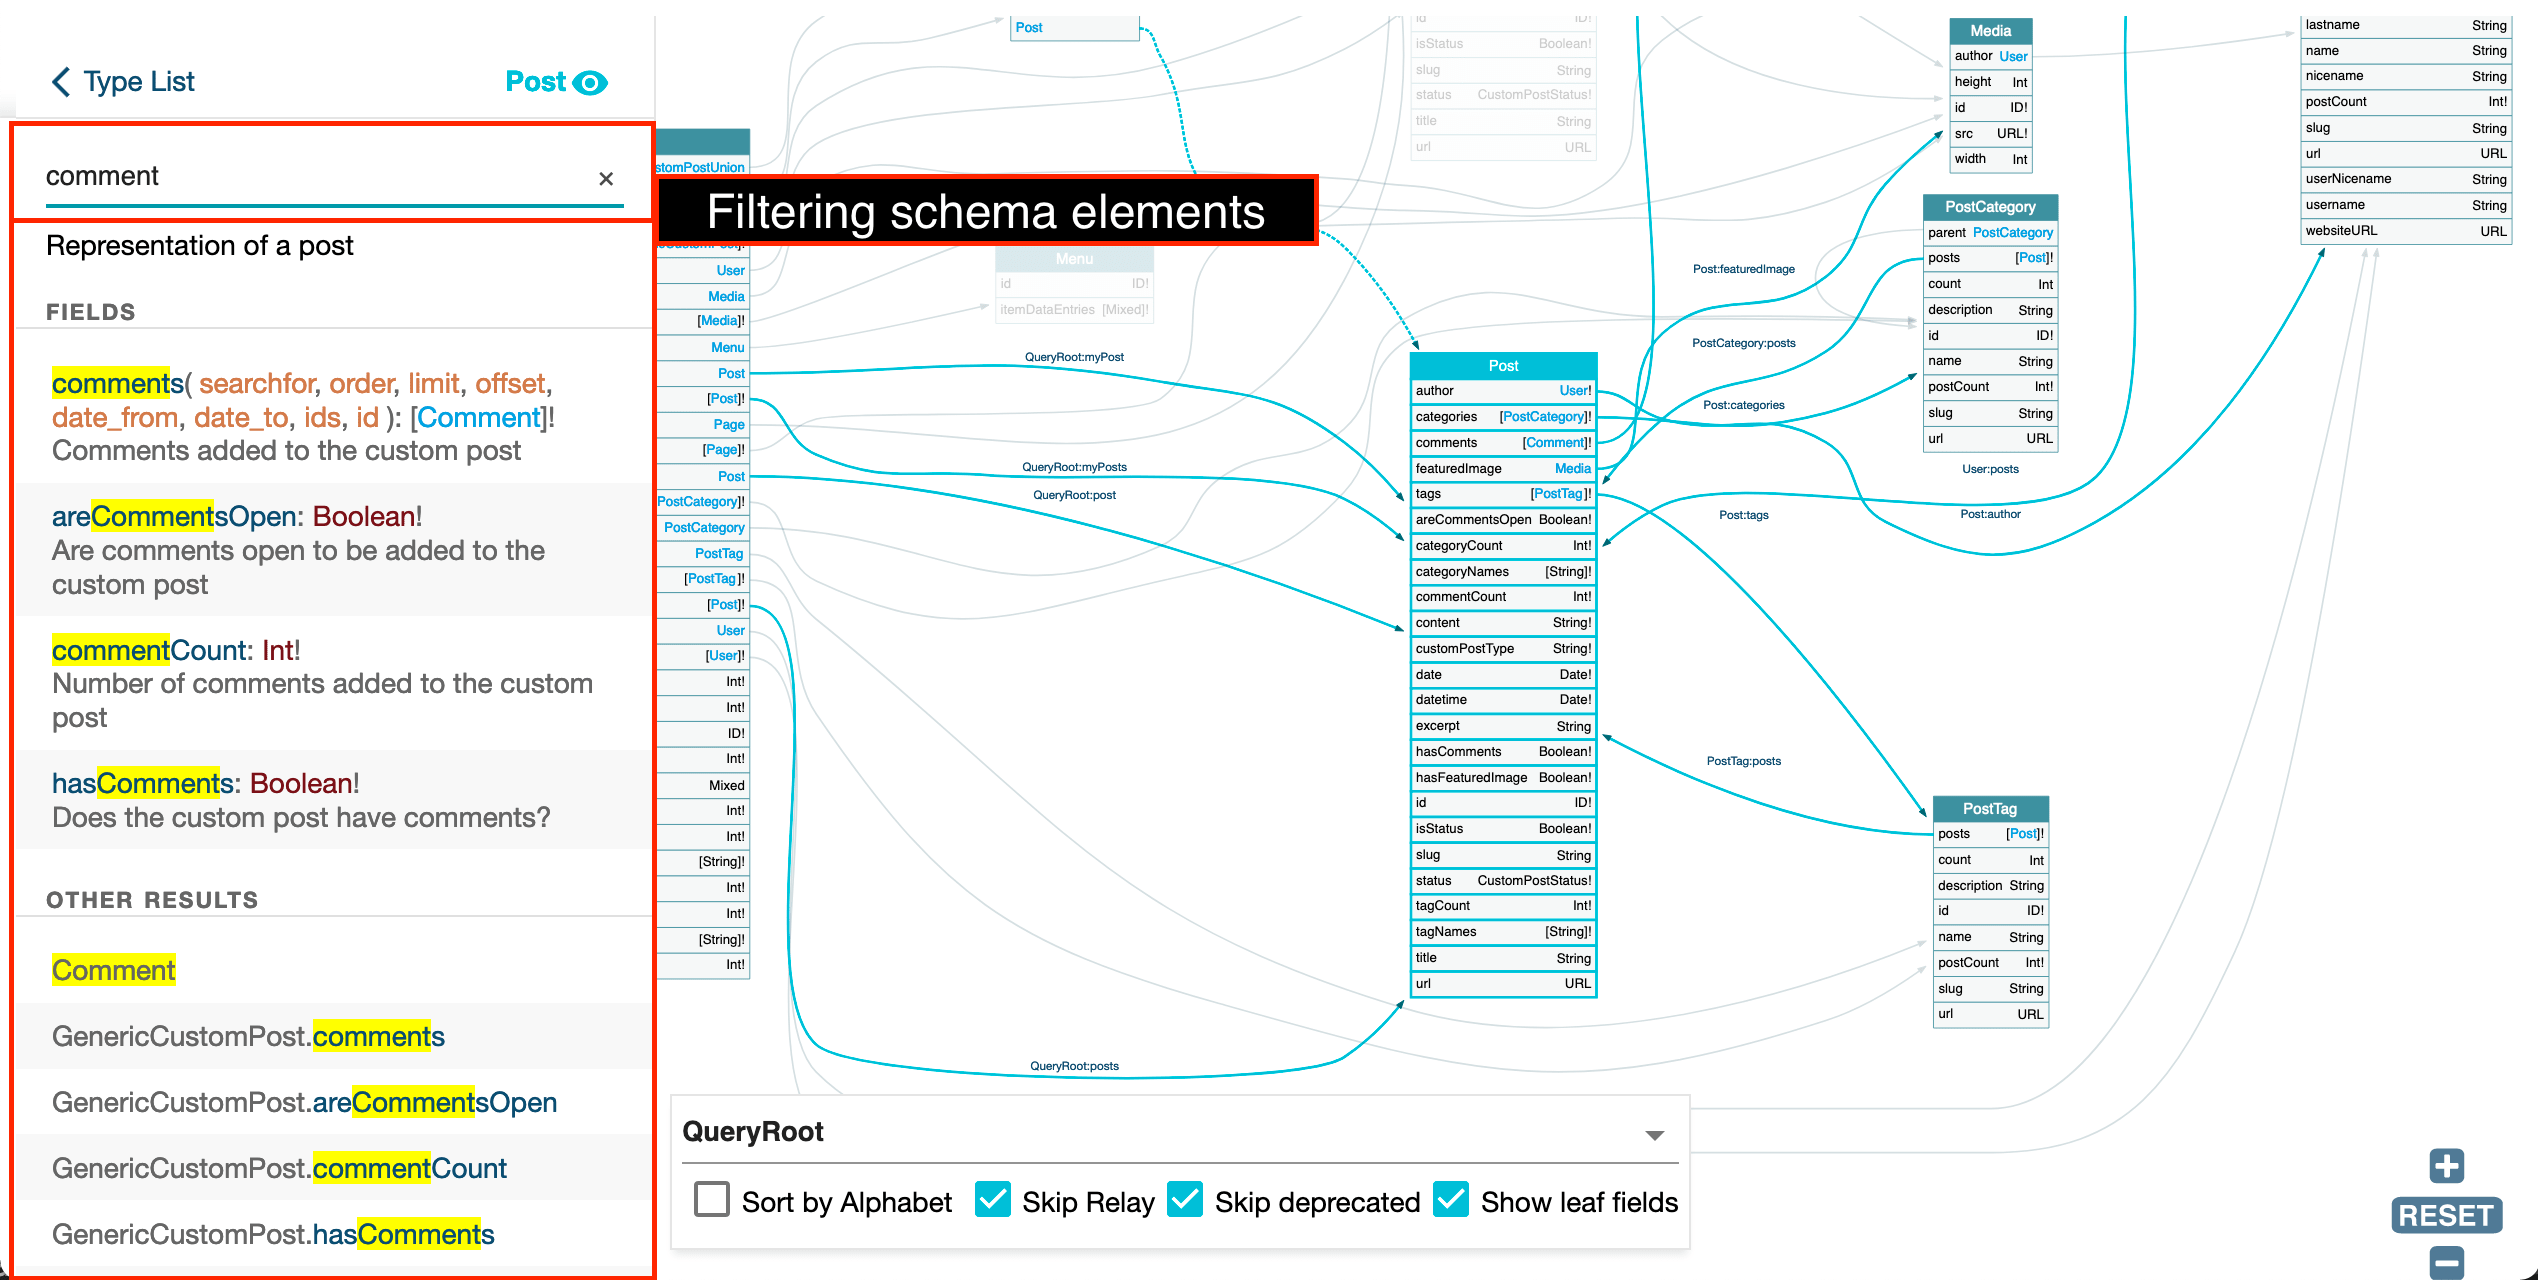 Filtering schema elements